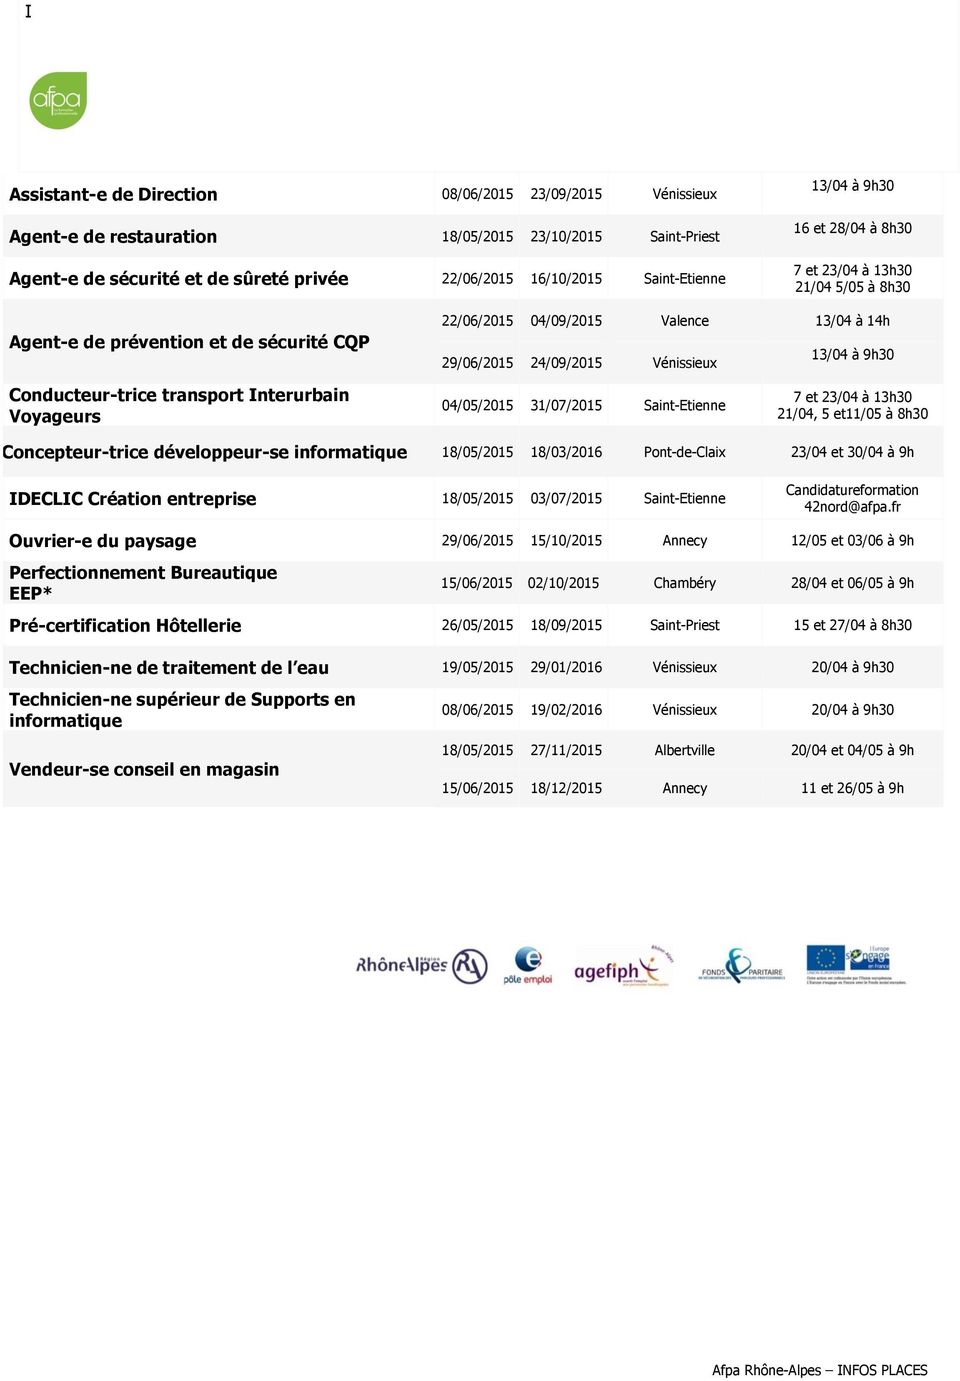 Interurbain Voyageurs 04/05/2015 31/07/2015 Saint-Etienne 21/04, 5 et11/05 Concepteur-trice développeur-se informatique 18/05/2015 18/03/2016 Pont-de-Claix 23/04 et 30/04 à 9h IDECLIC Création